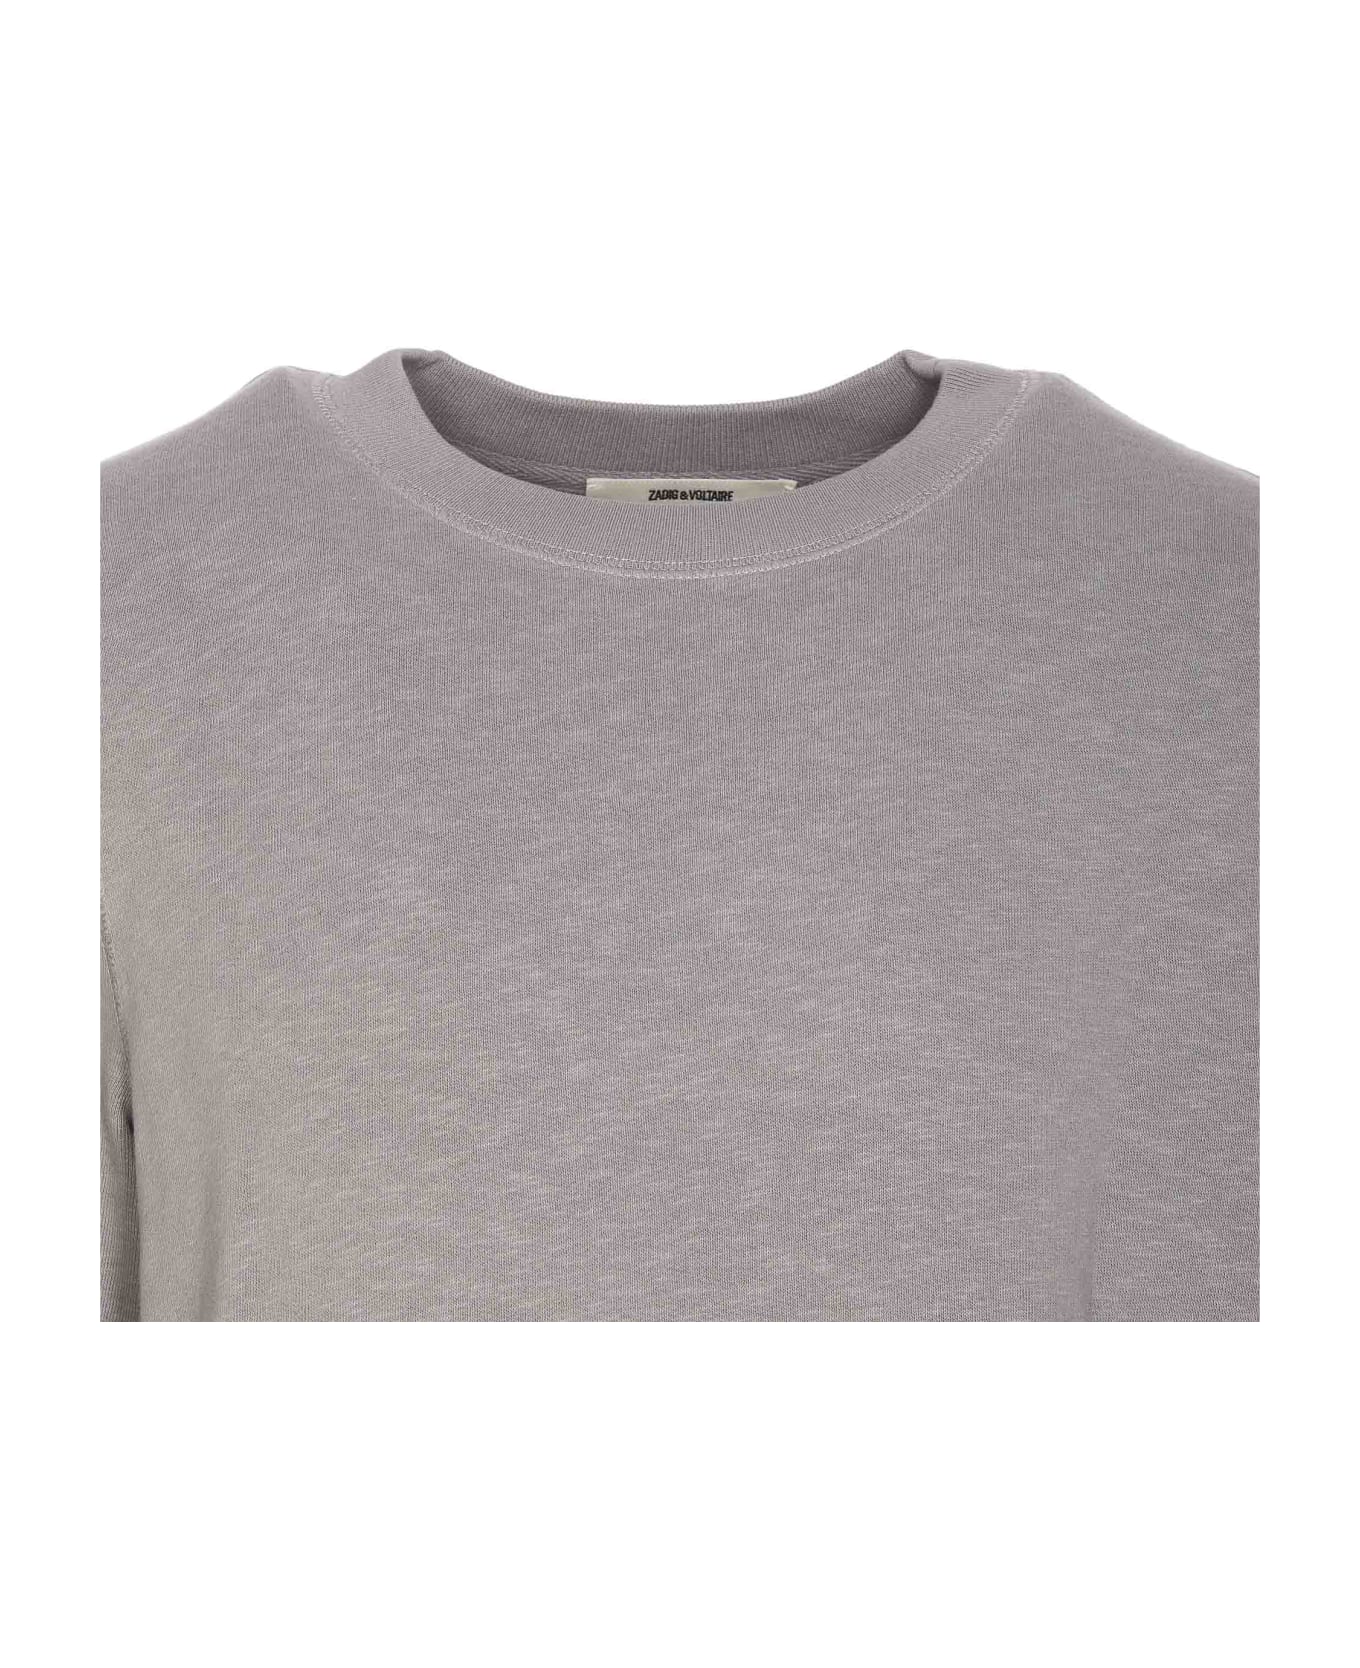 Zadig & Voltaire Skull Block Sweatshirt - Grey